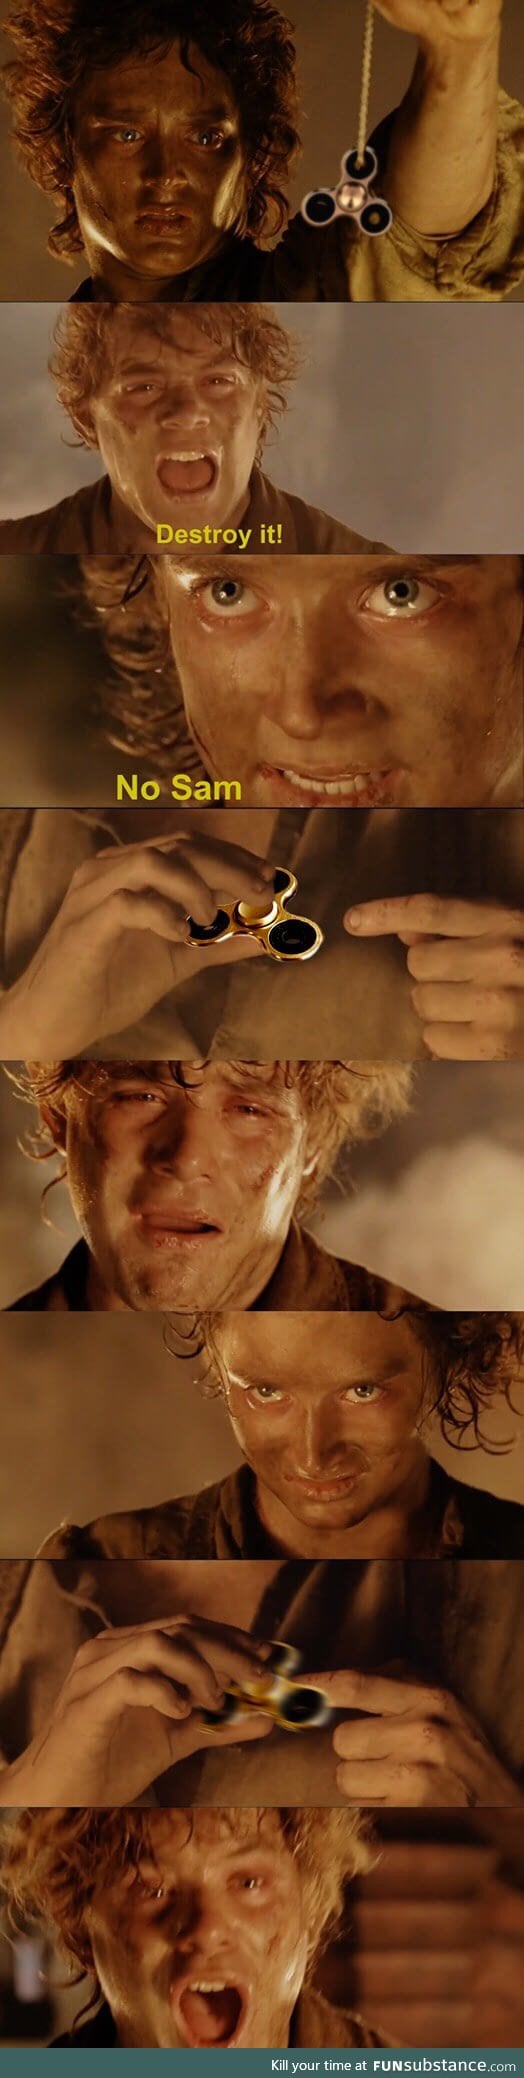 Don't do it, Master Frodo